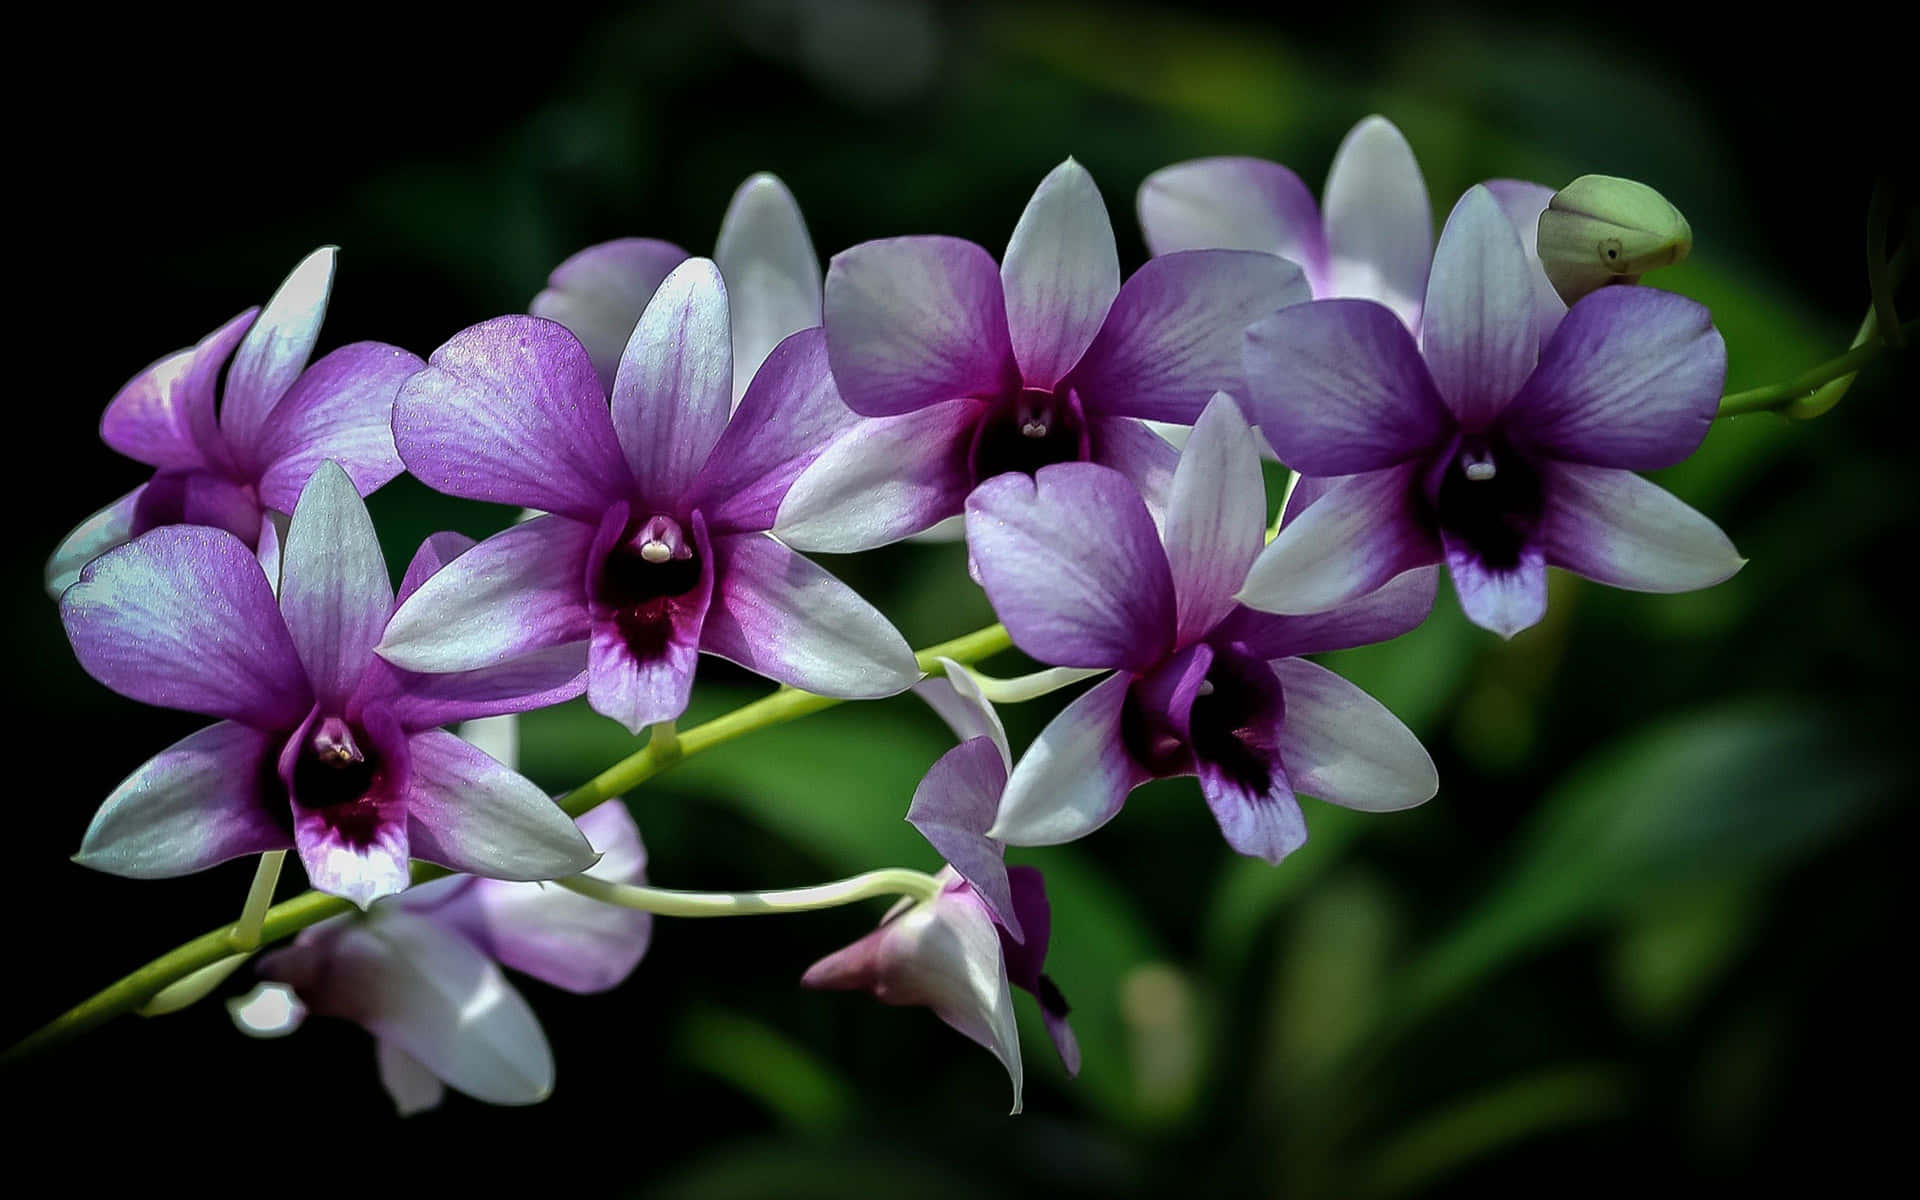 Orchideeviola Su Un Ramo Con Sfondo Scuro